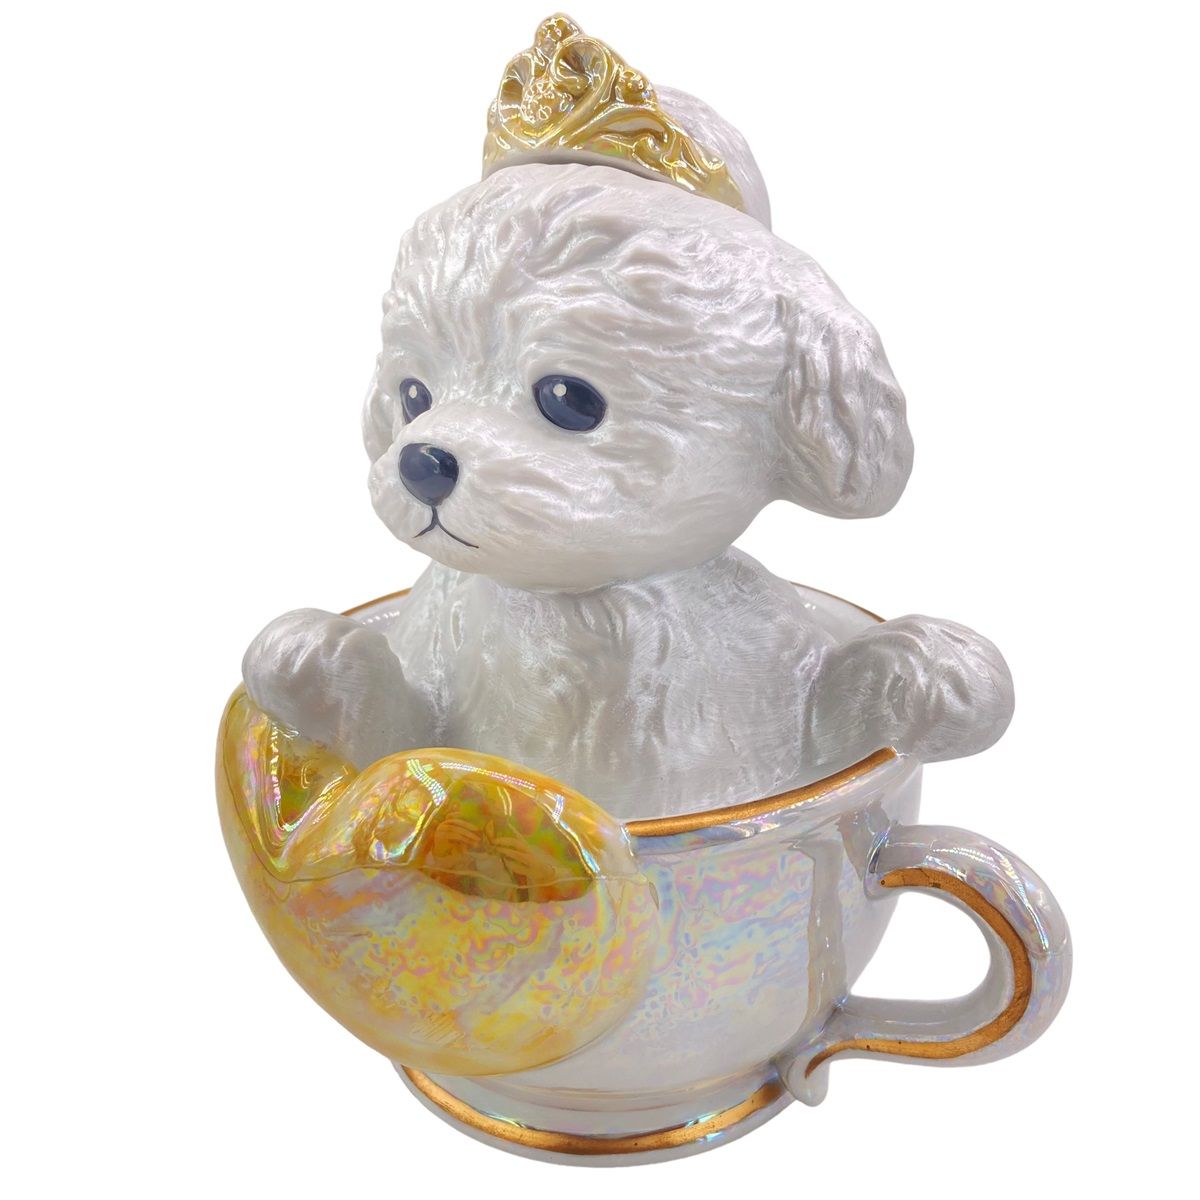 【中古】 Teacup poodle ティーカッププードル 飾りボトル 空瓶 ホワイト 置物 犬 24006898 AS